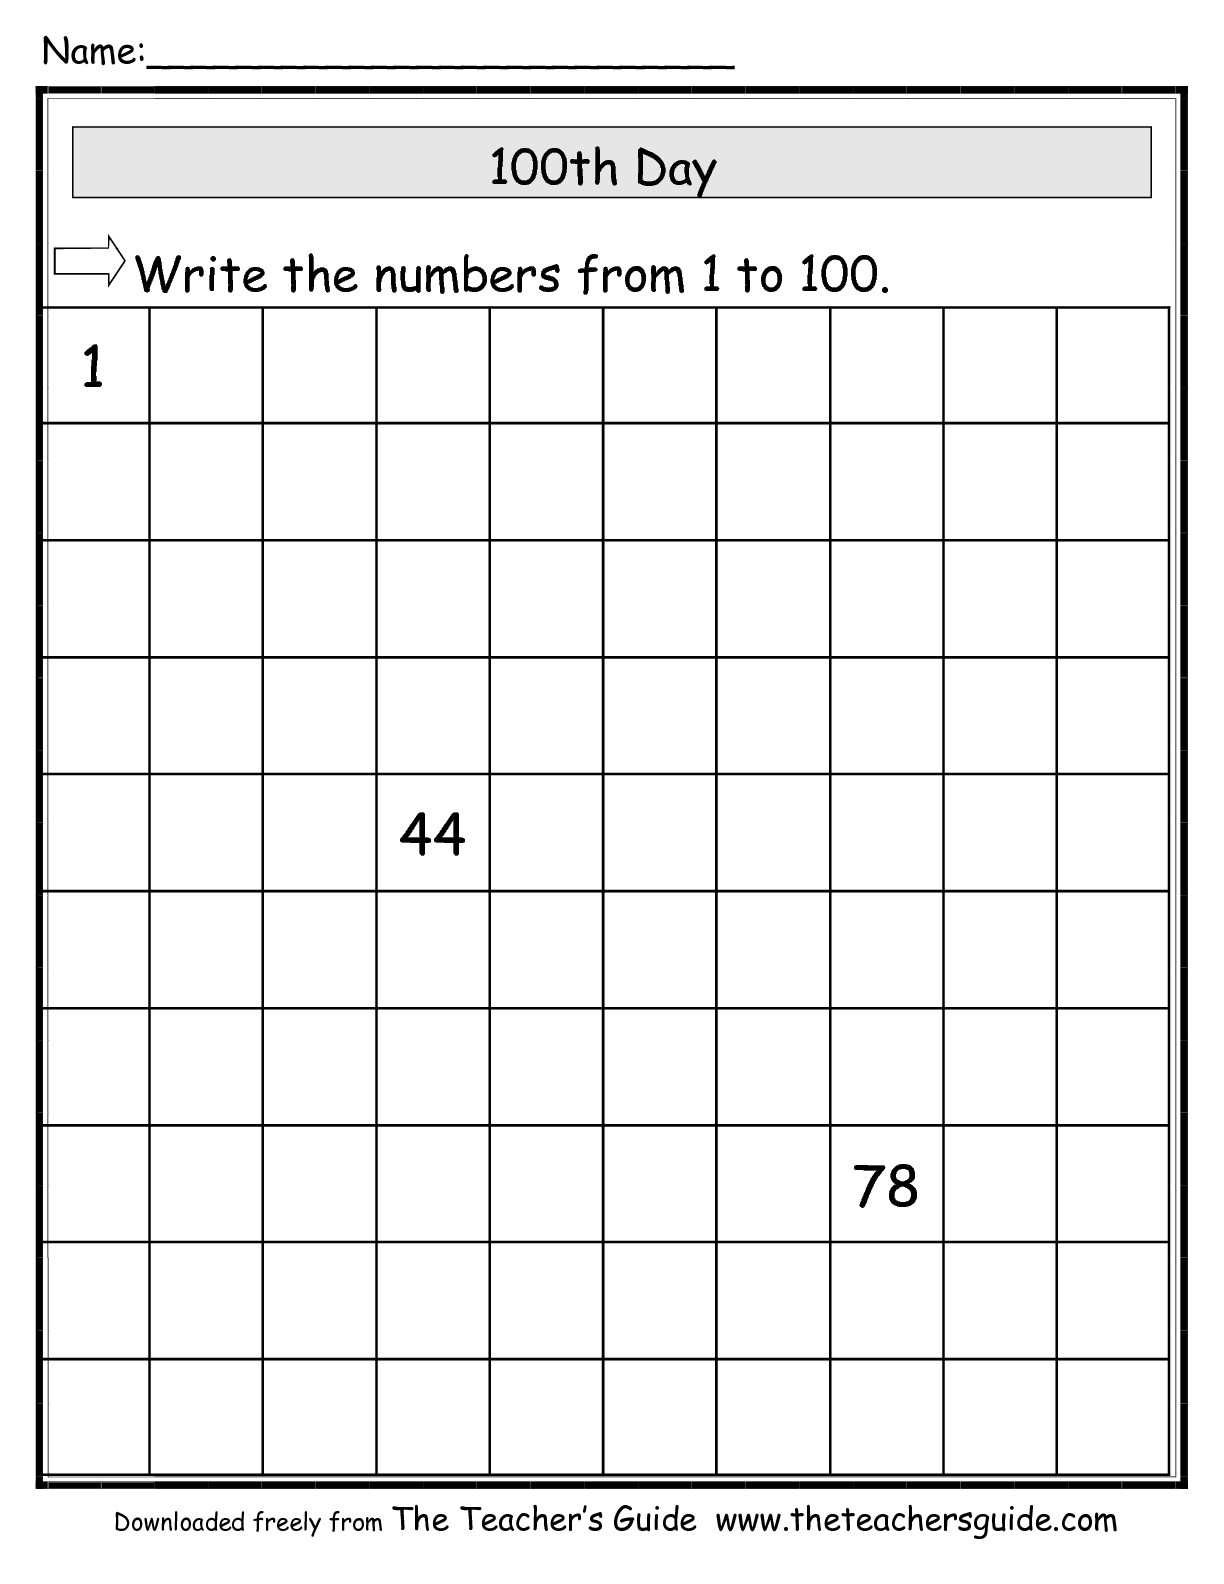 15 Best Images of Fill Missing Number Worksheets - Missing Number